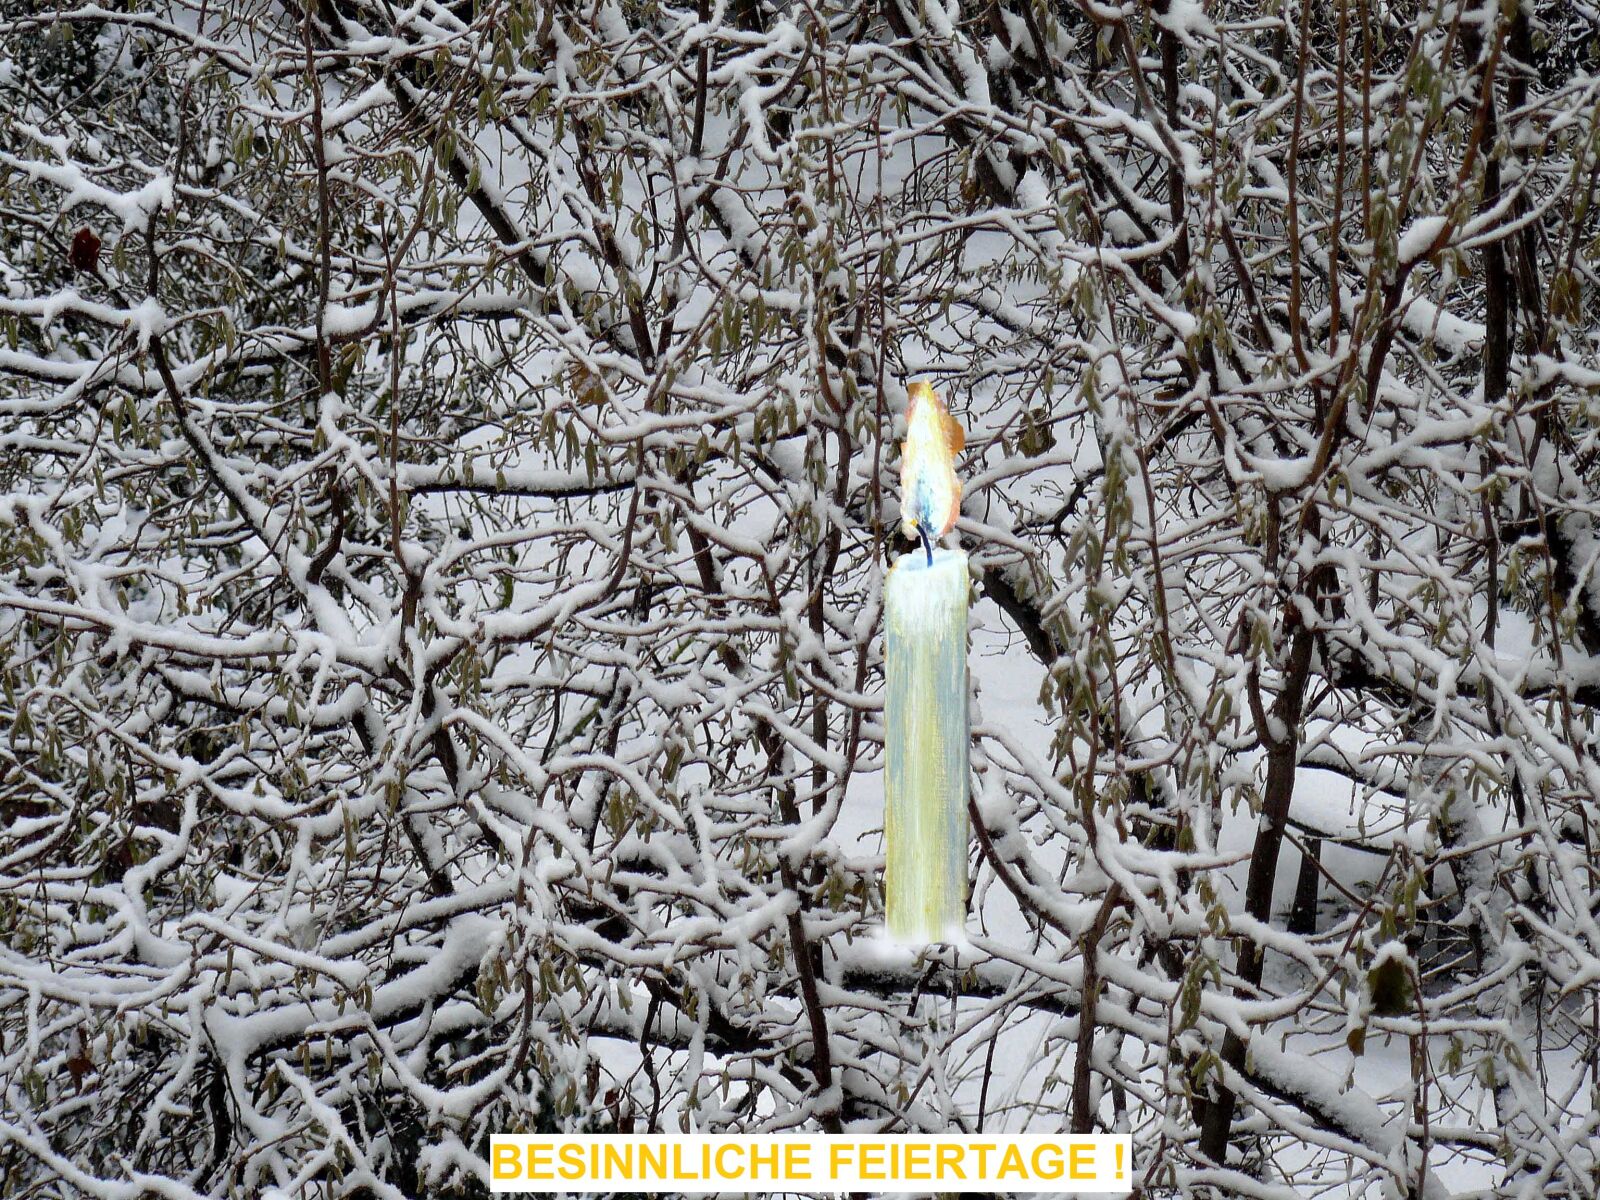 Panasonic DMC-FZ8 sample photo. Christmas, candle, snow photography